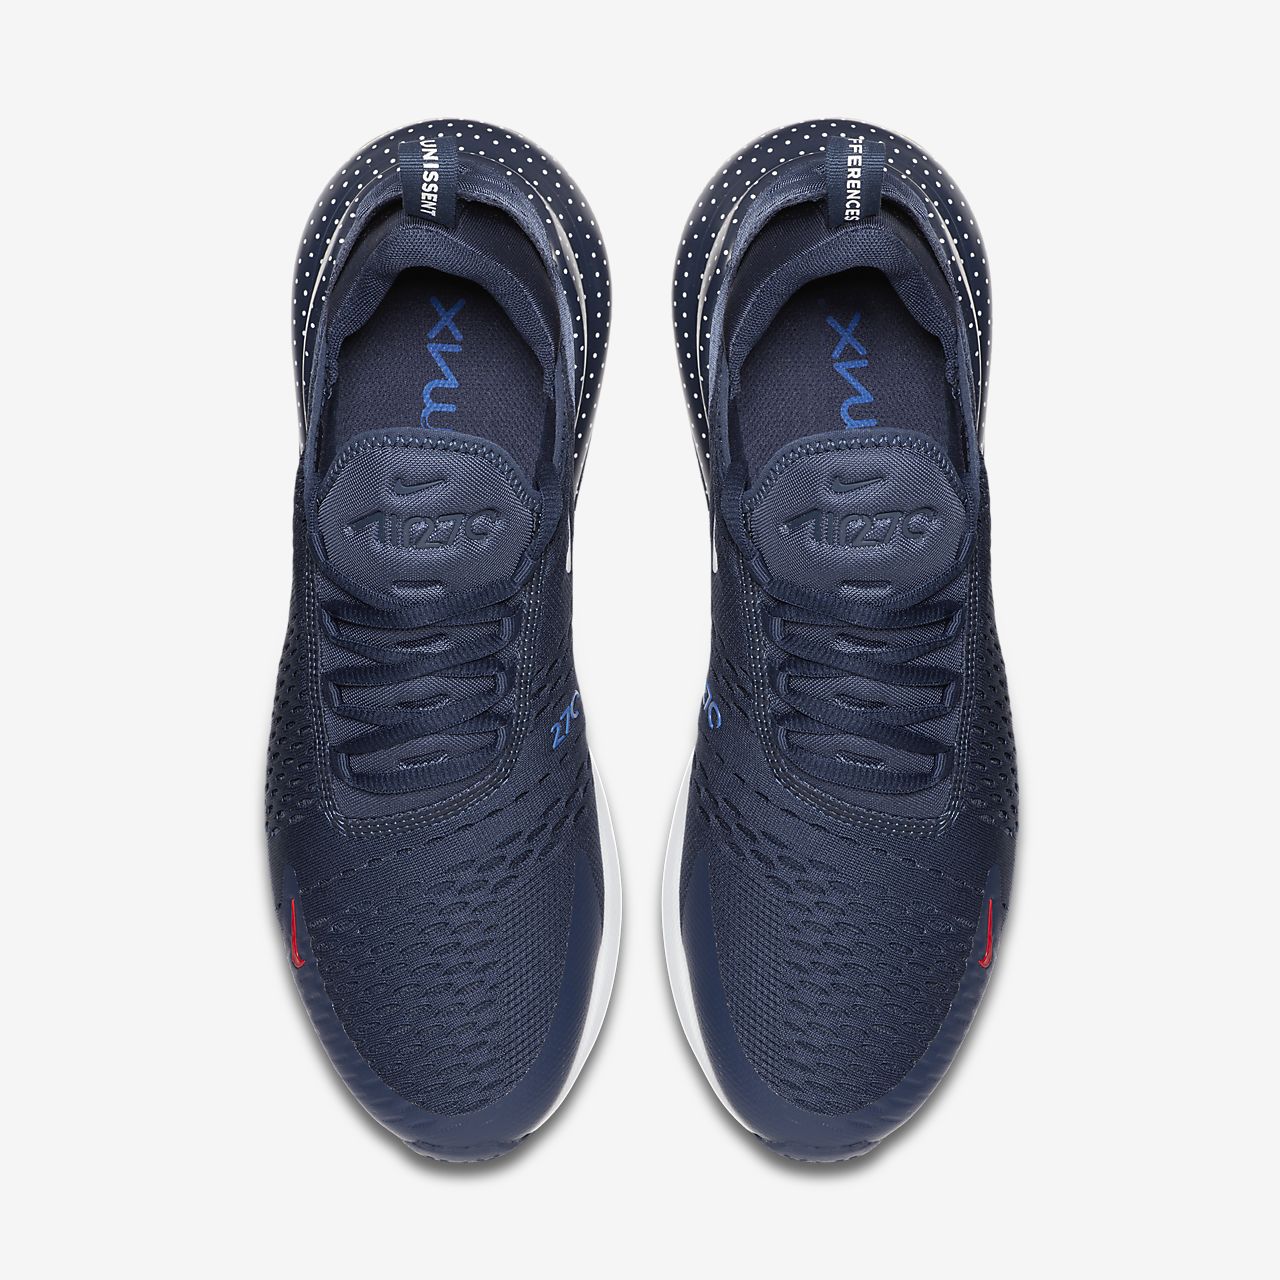 Nike Air Max 270 - Sneakers - Mørkeblå/Rød/Hvide | DK-17234